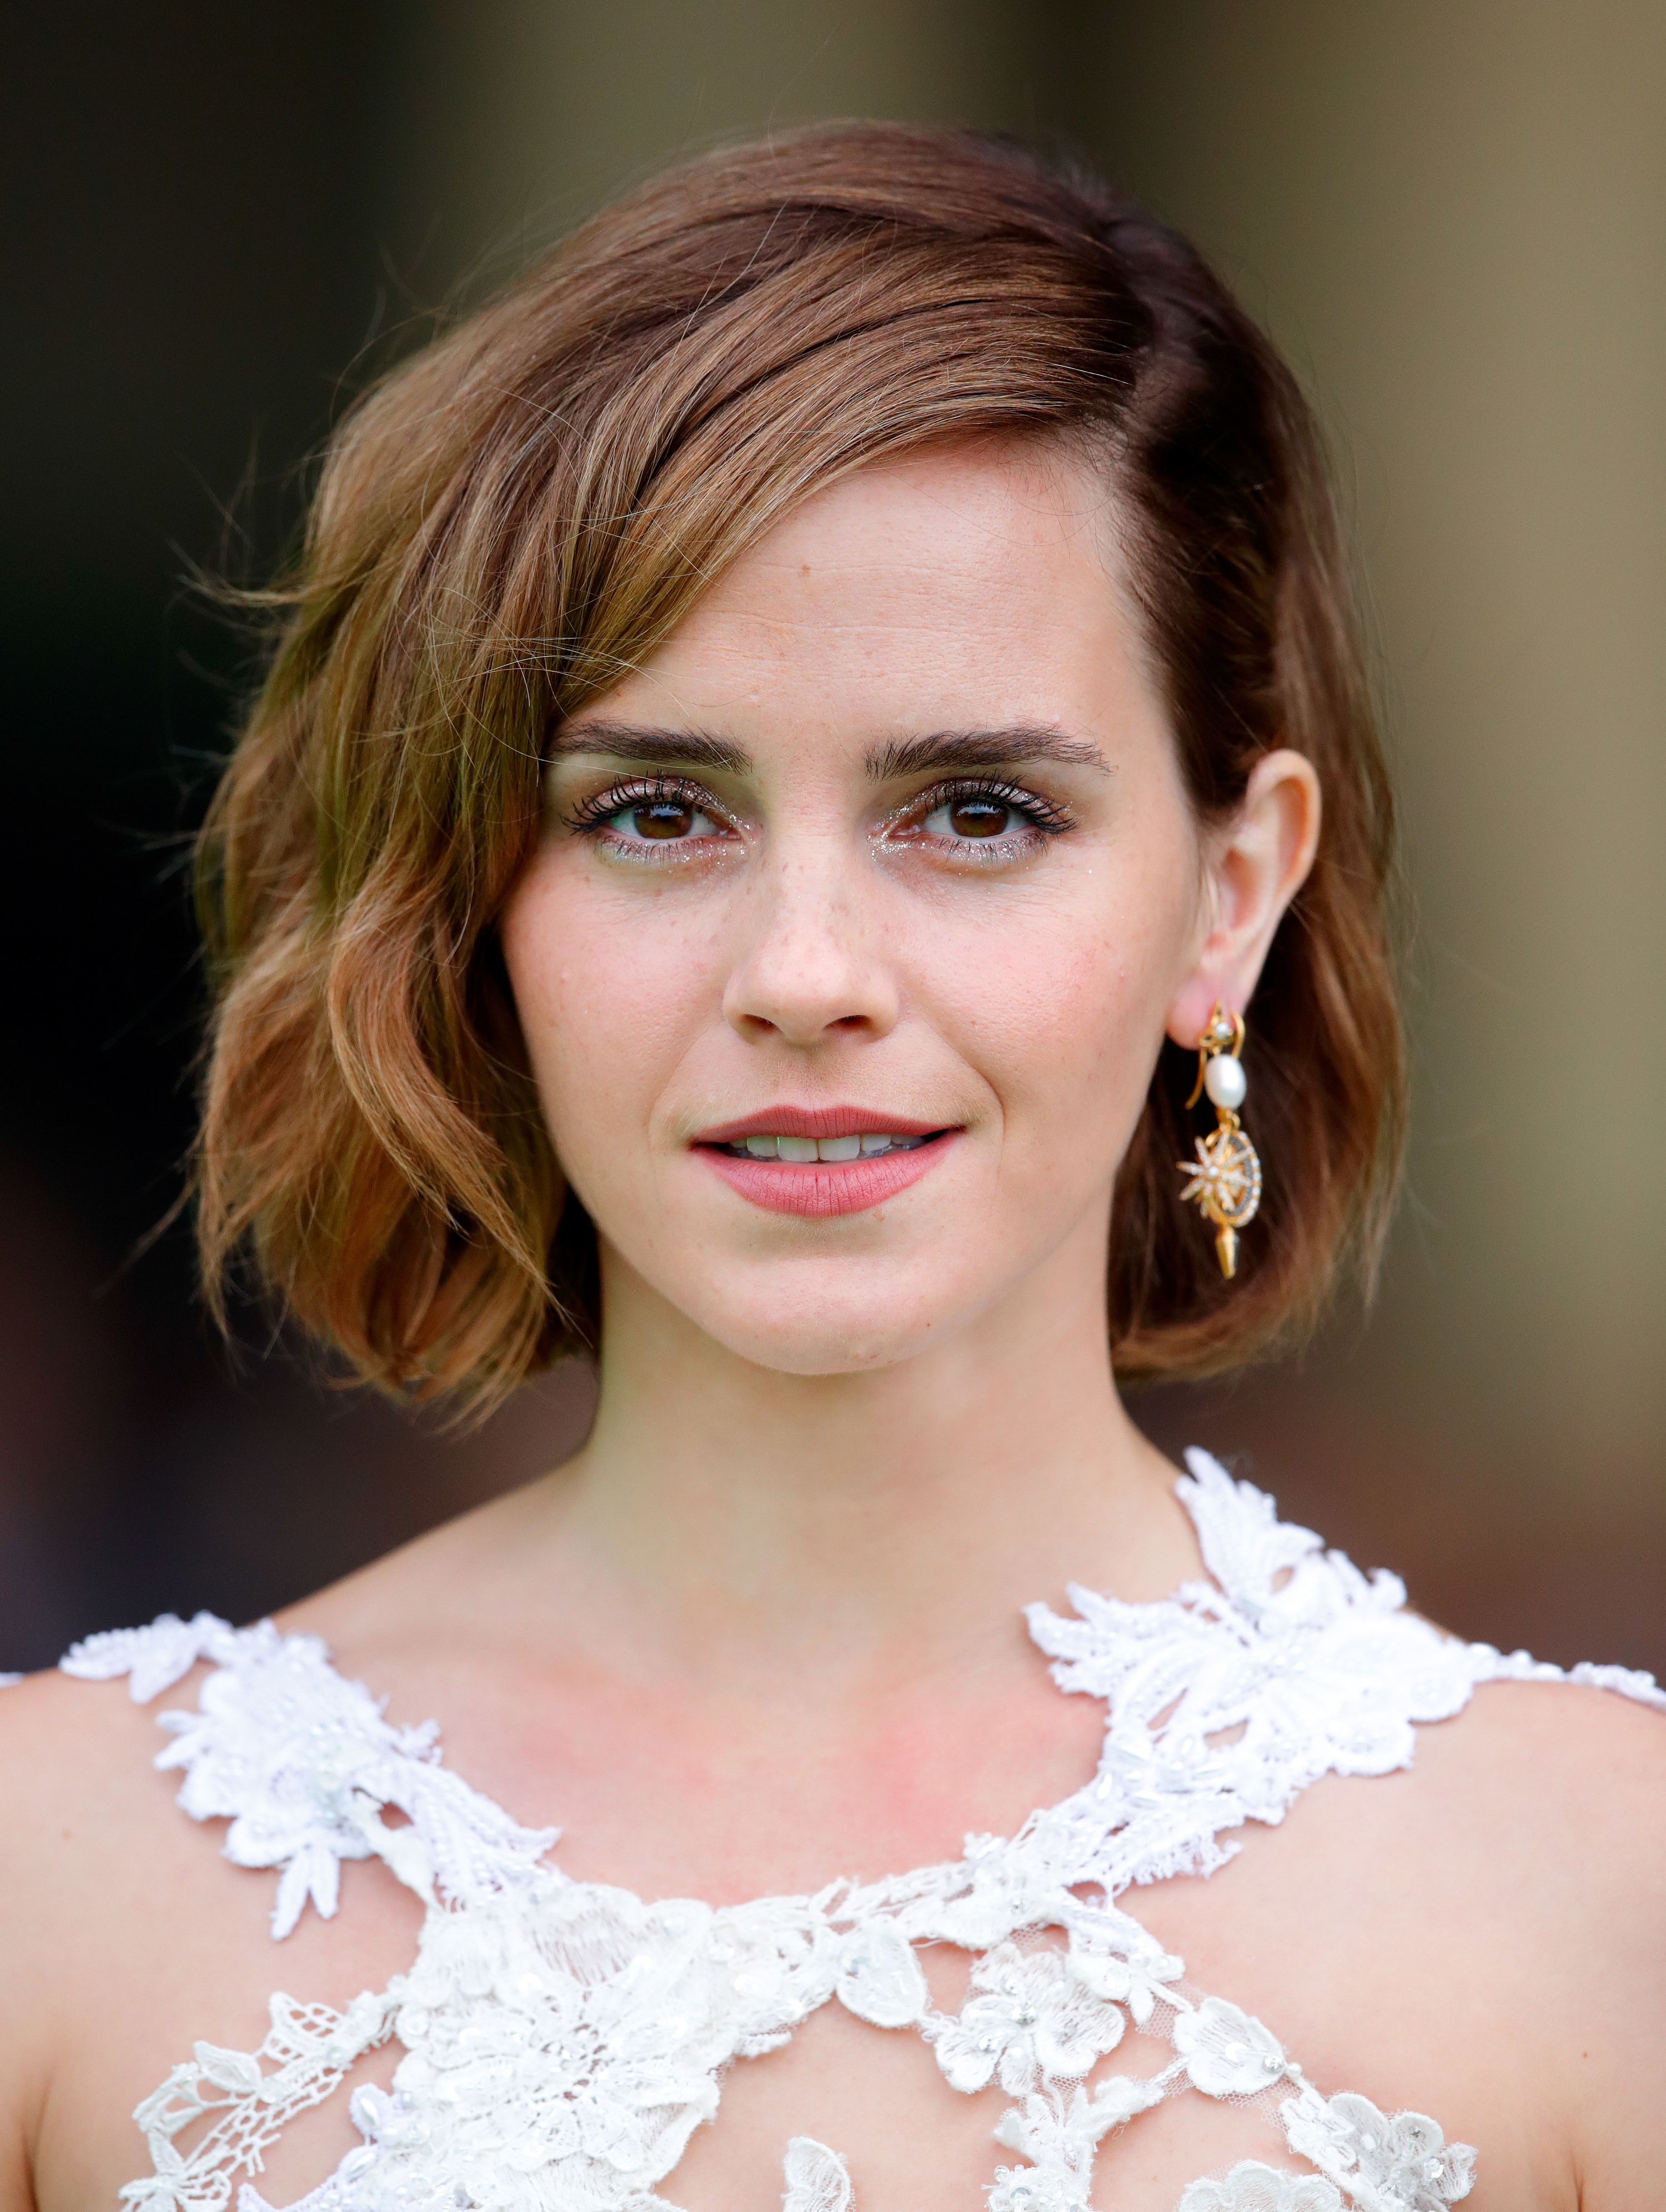 Emma Watson is shown